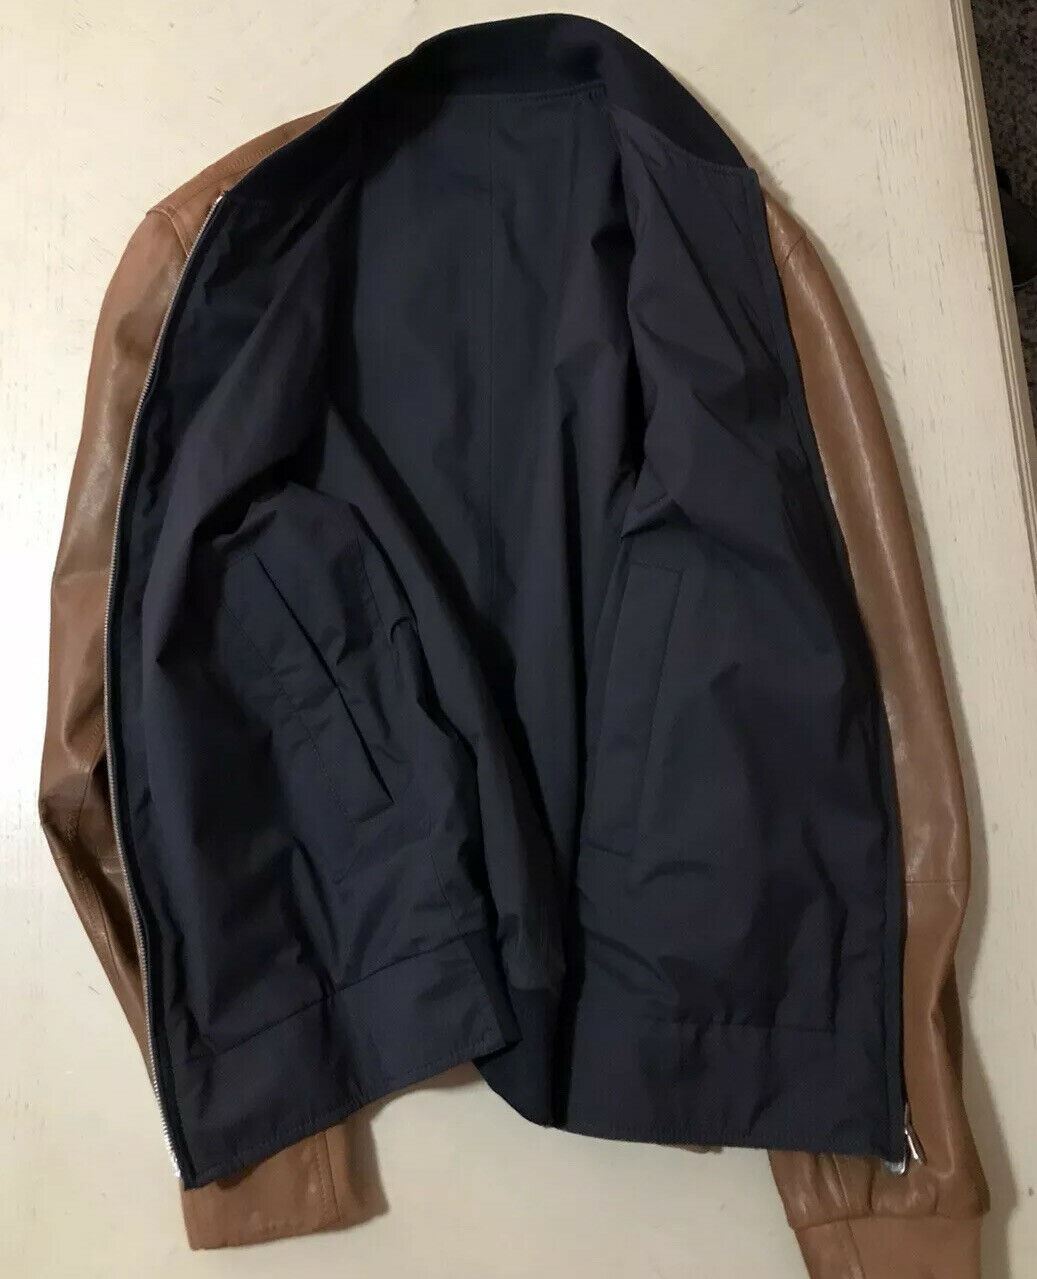 Новая мужская двусторонняя кожаная куртка Brunello Cucinelli стоимостью 5995 долларов США DK Коричневый/Темно-синий L